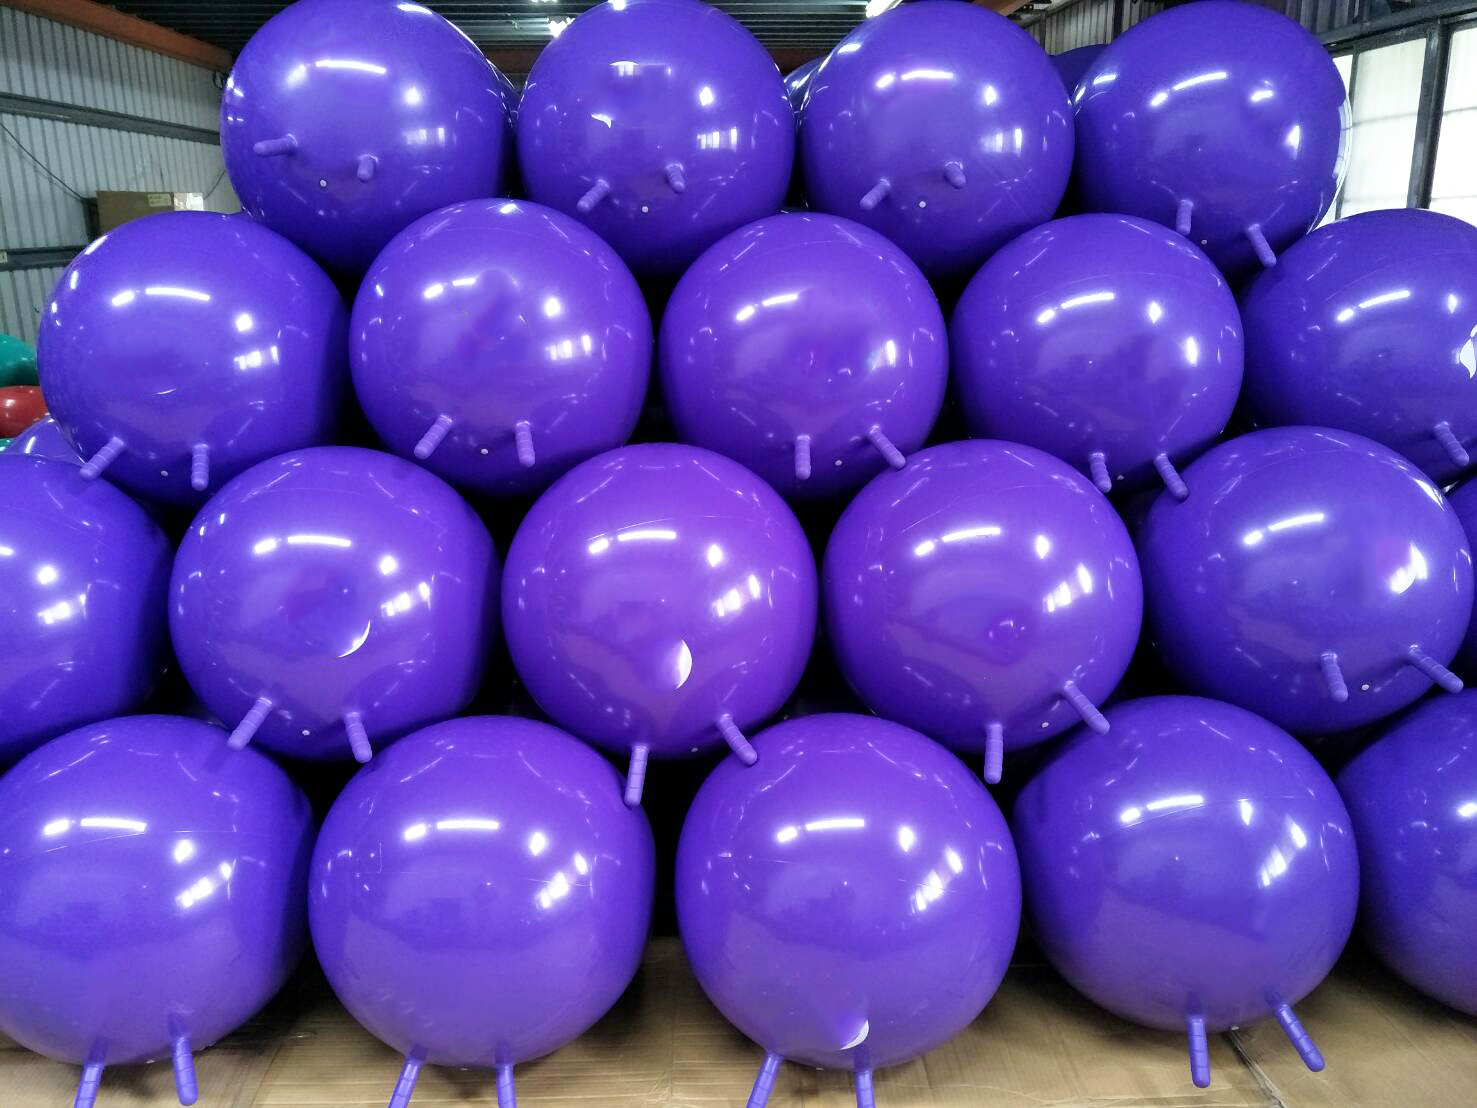 purple space hopper